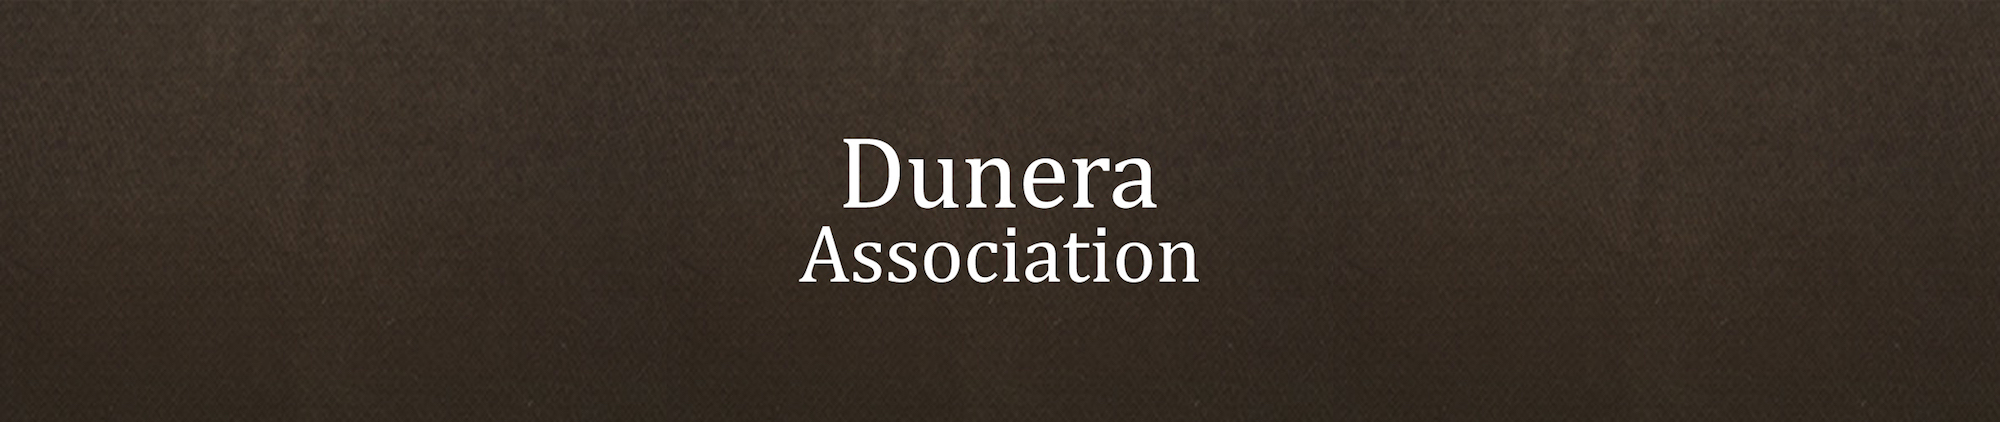 The Dunera Association